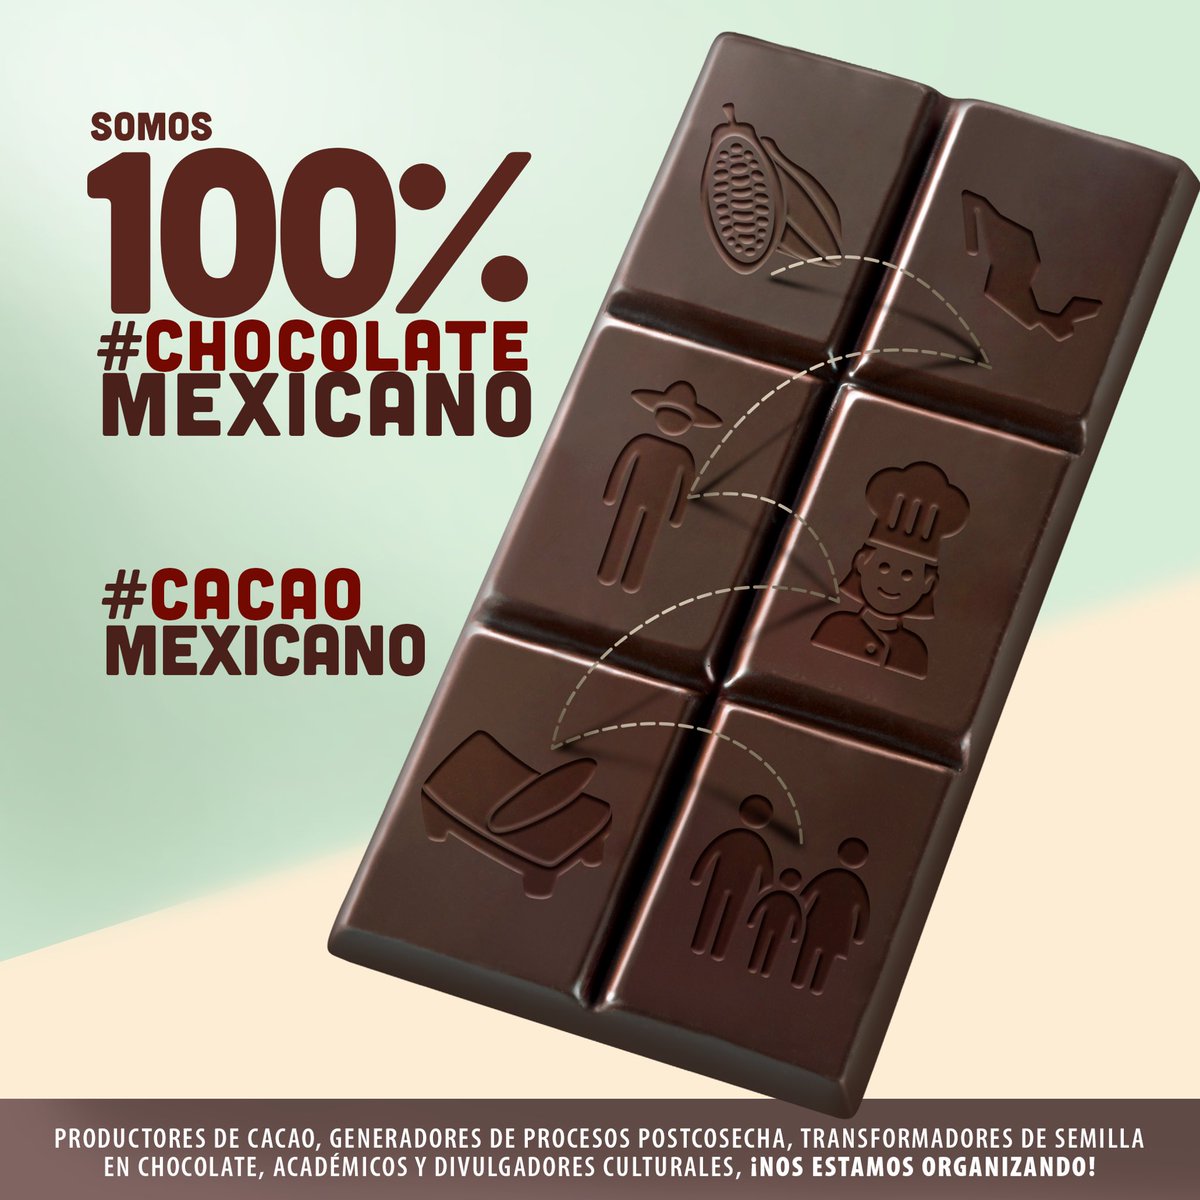 ¡Hoy celebramos unidos!#DiaInternacionaldelChocolate #cacaomexicano #chocolatemexicano